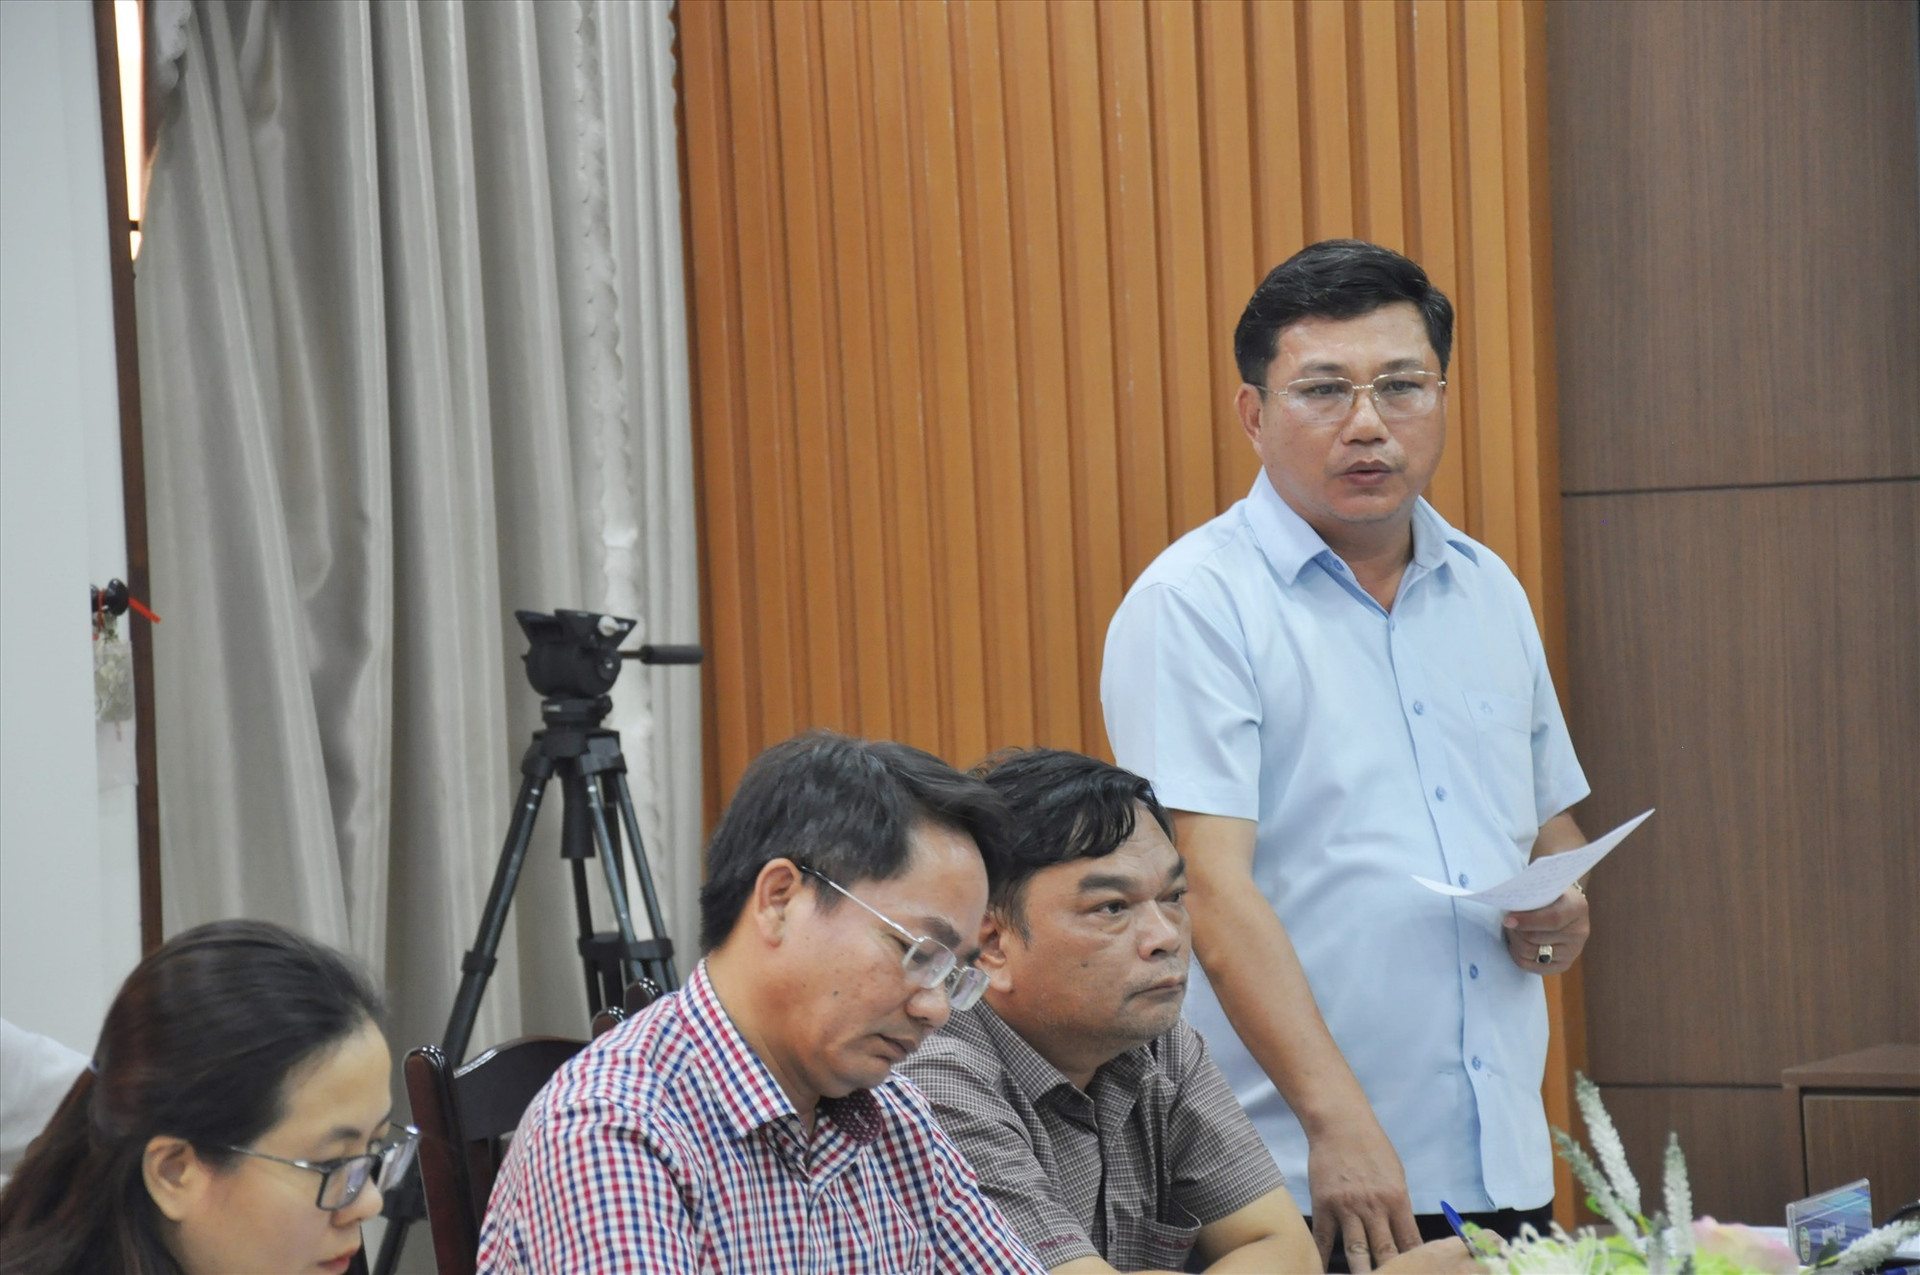 Thành viên đoàn giám sát đặt vấn đề cần làm rõ từ UBND huyện Tiên Phước và ngành chuyên môn địa phương. Ảnh: N.Đ